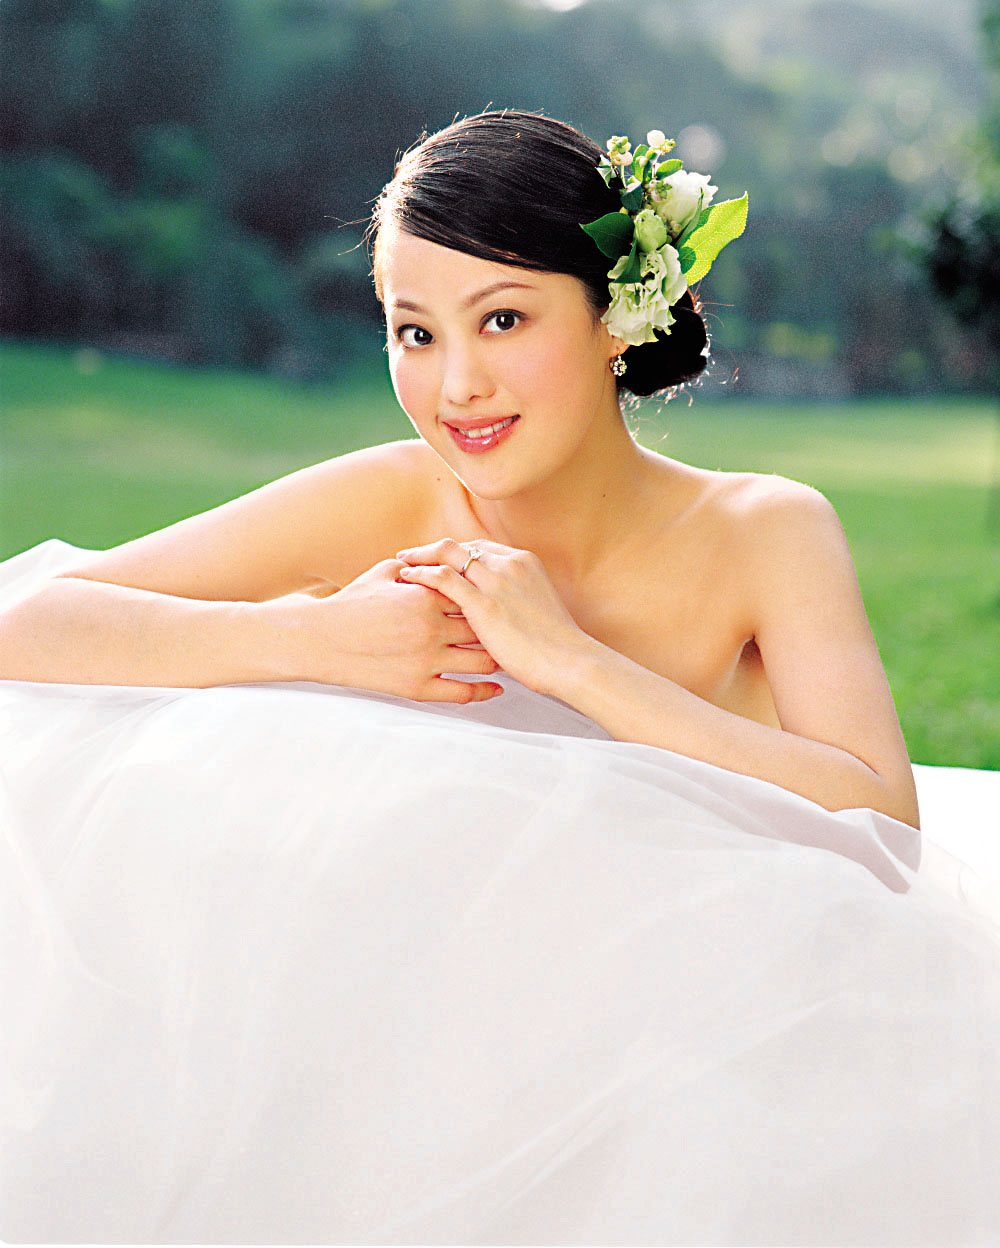 章小蕙更穿上婚紗推銷「七日結婚修身療程」。